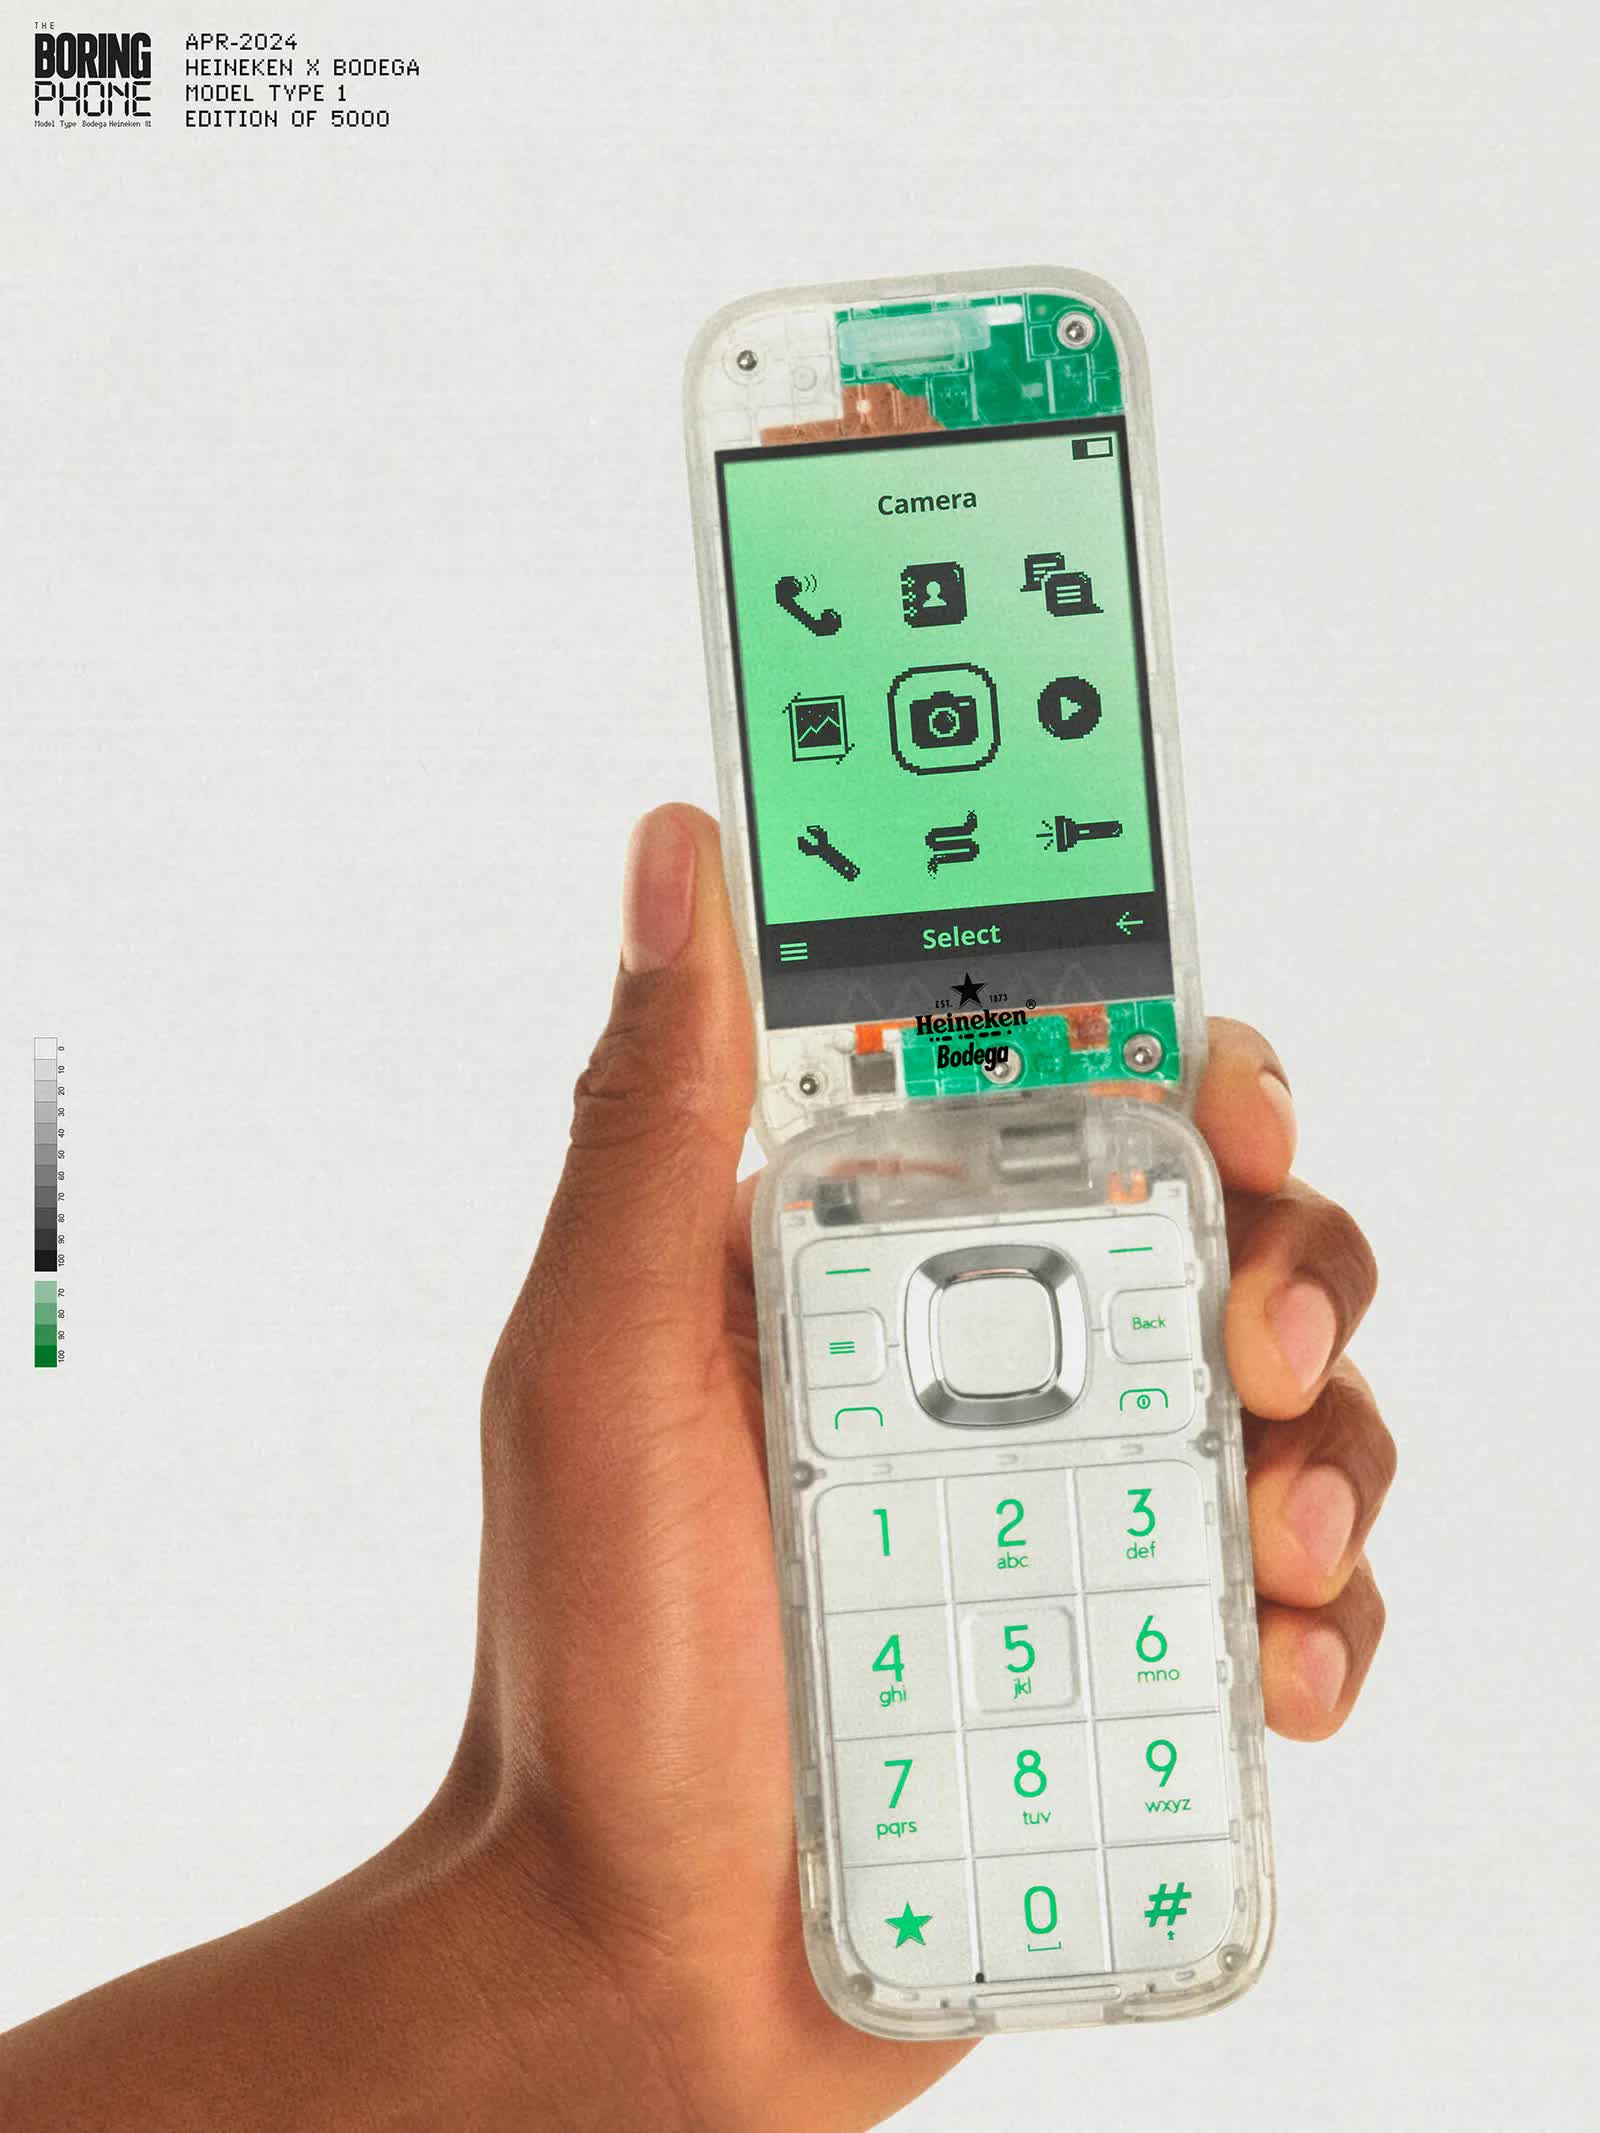 Boring Phone to klasyczny telefon z klapką od HMD Global, który idzie na przekór trendom